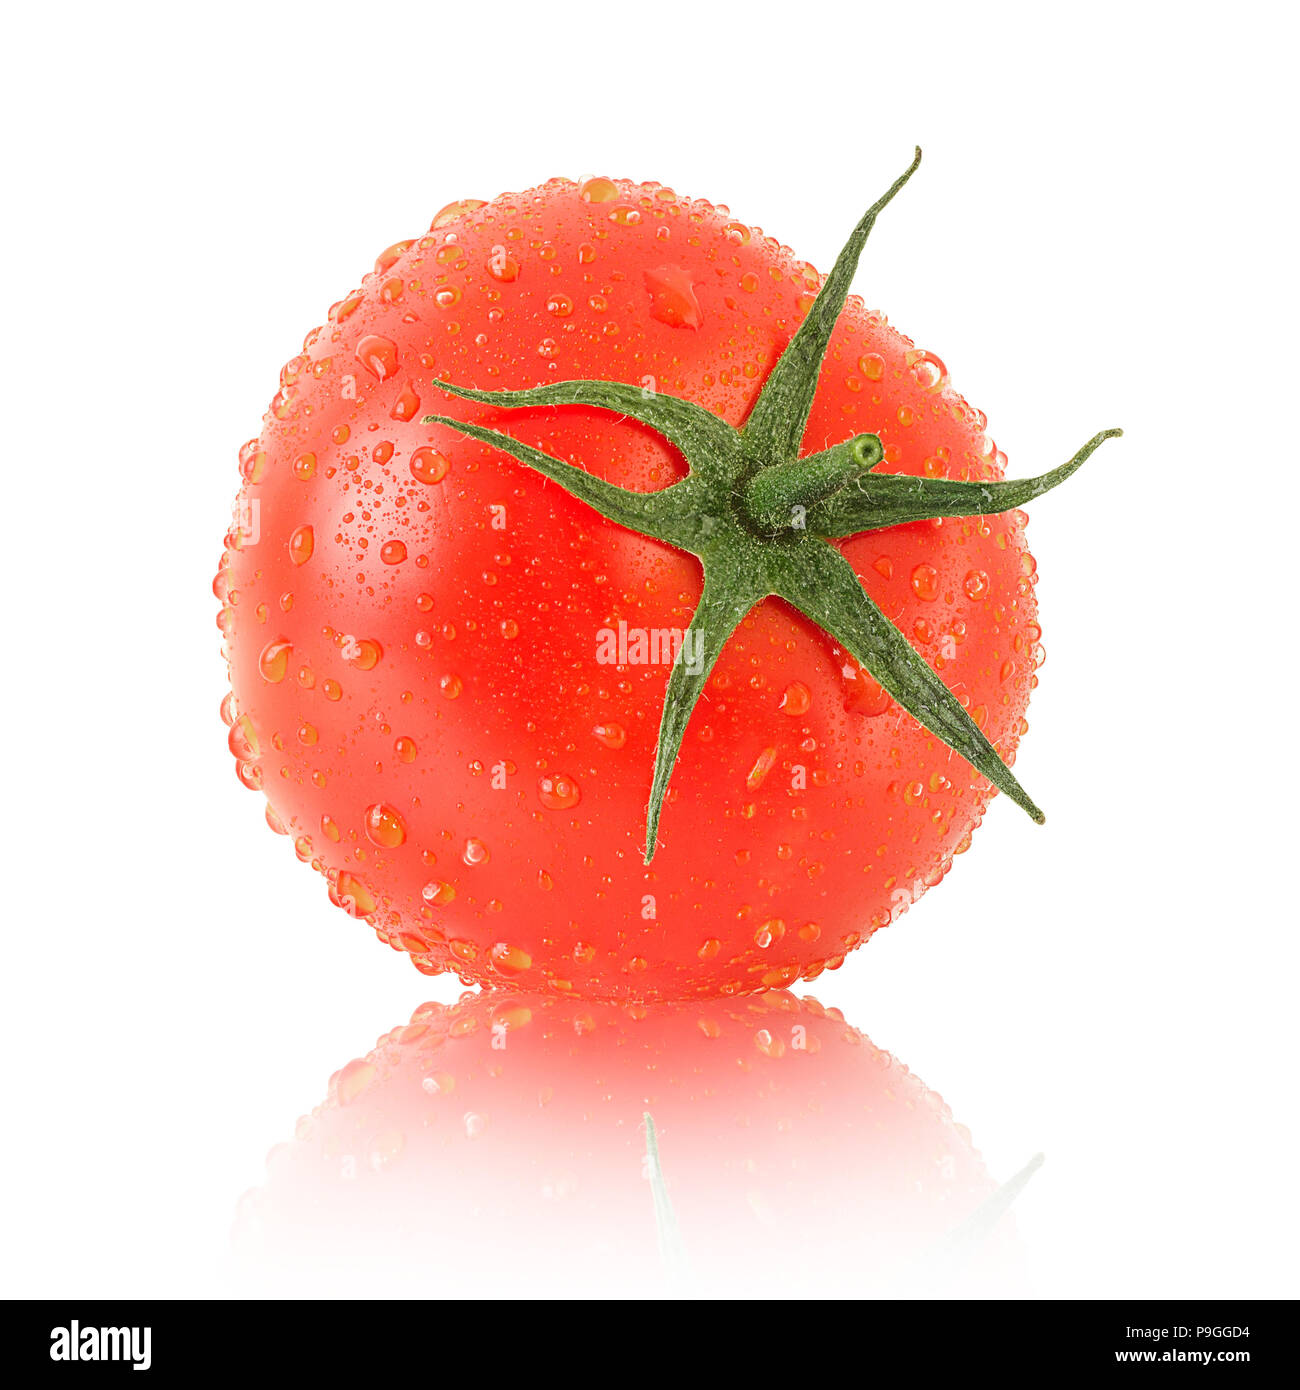 Tomate mûre avec des feuilles vertes Banque D'Images